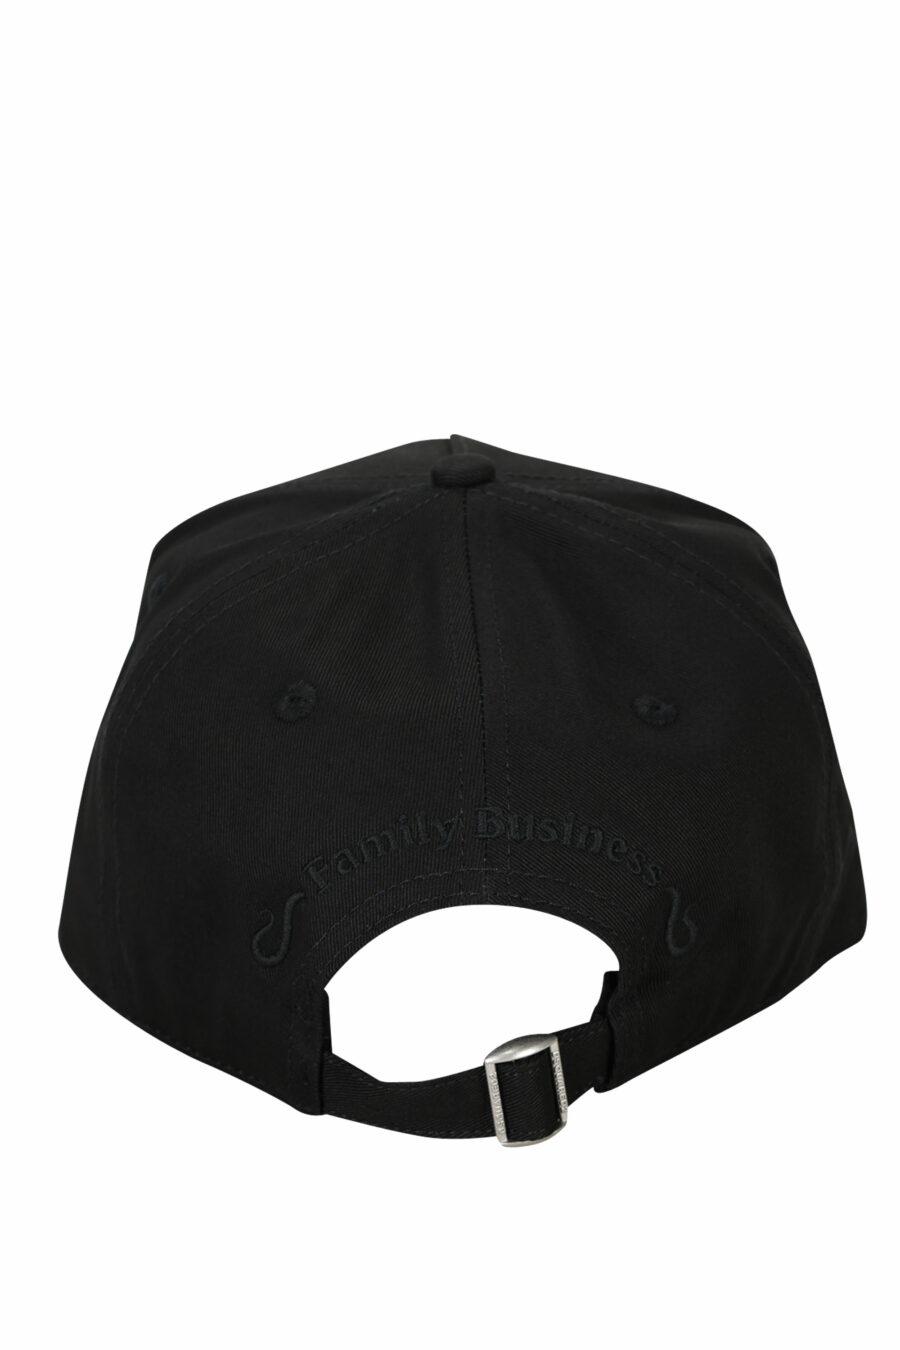 Gorra negra con logo "dsq2" en recuadro monocromático - 8055777286609 1